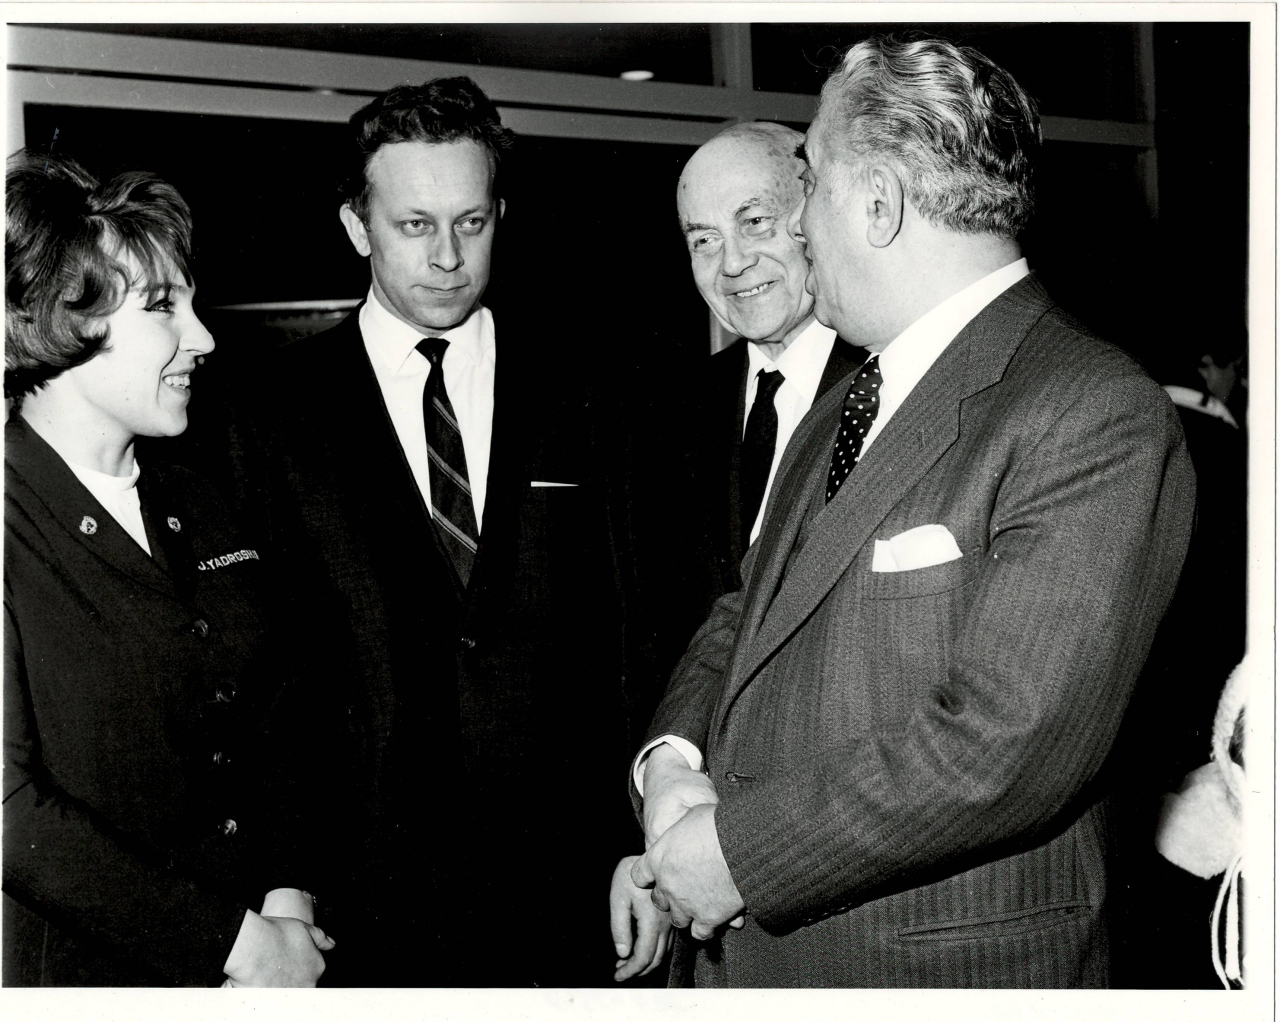 Լուսանկար. Ա. Խաչատրյանը ՄԱԿ-ին առընթեր սովետական ներկայացուցչությունում՝ 3-րդ քարտուղար Վ. Իվանովի, գիդ-թարգմանչուհի Ջ. Յադրոշնիկովայի և ԱՄՆ-ում իր իմպրեսարիո Զարովիչի հետ